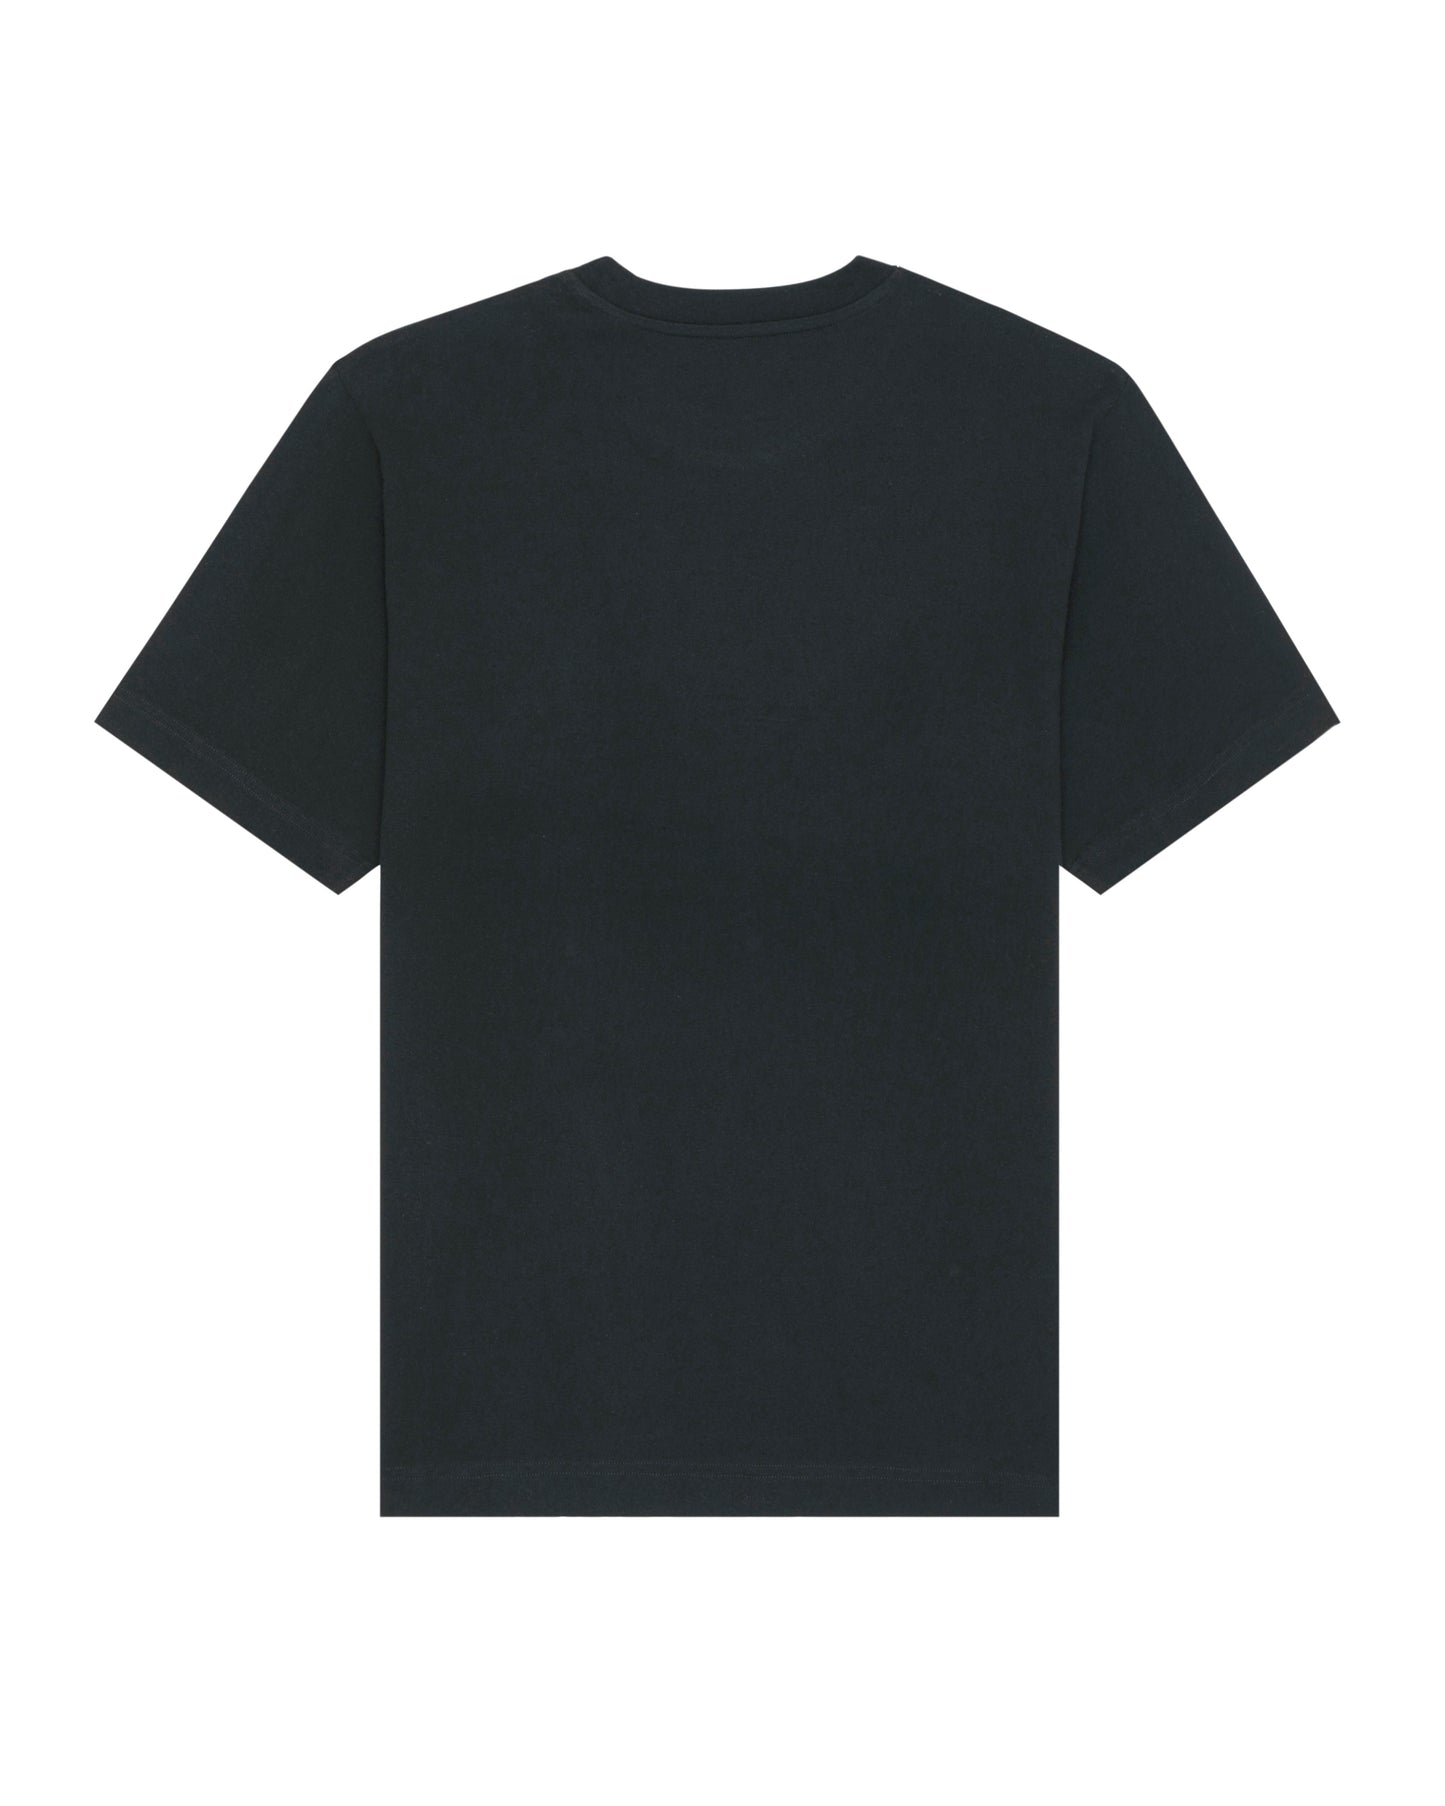 
                  
                    Wild Spirit T-Shirt - Black
                  
                